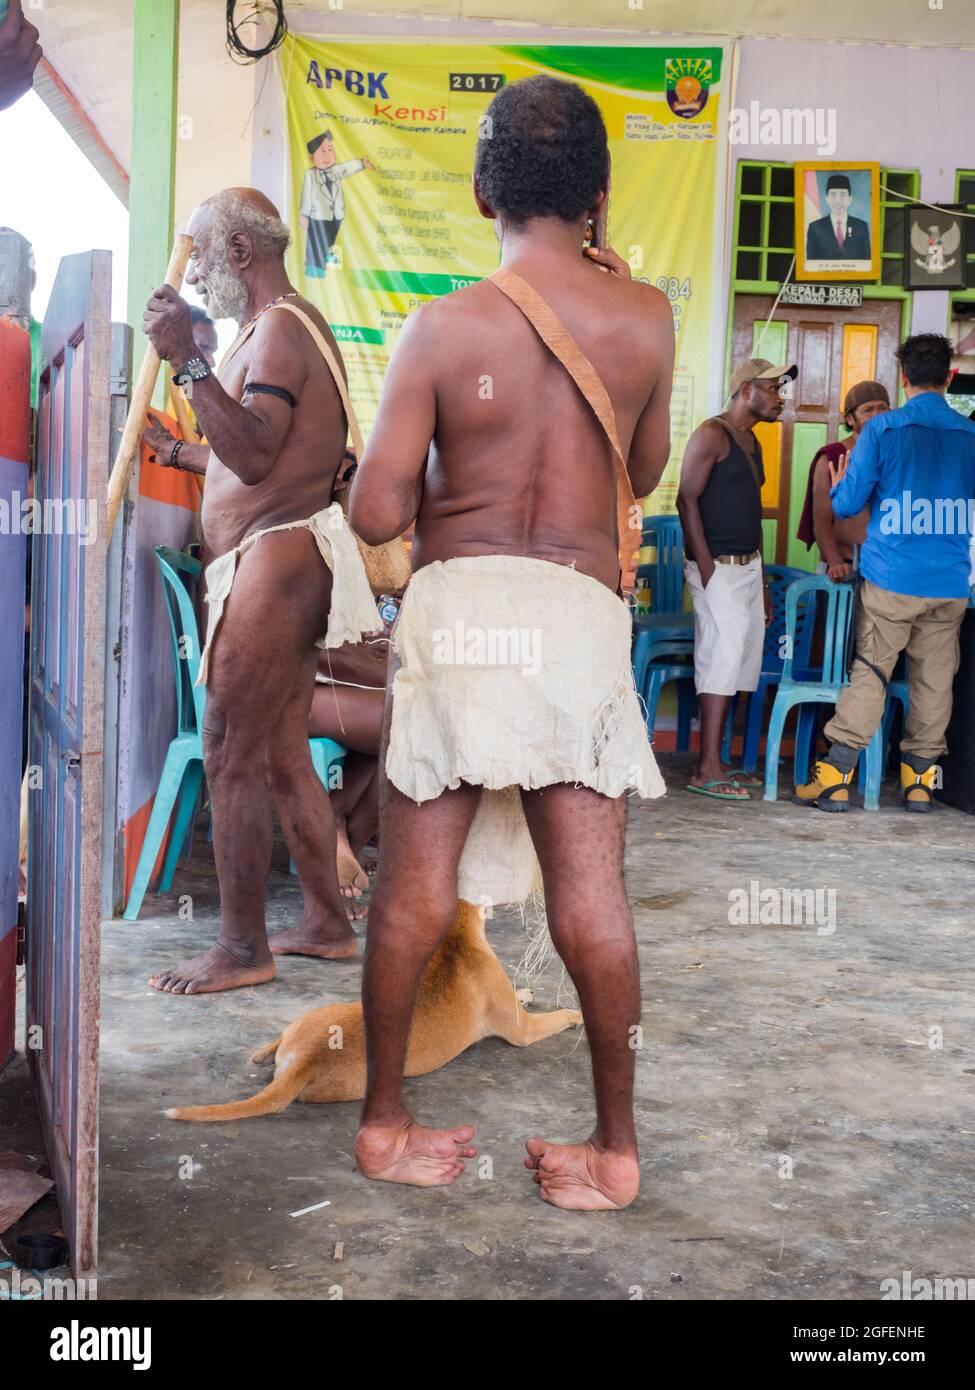 Bird's Head Peninsula, West Papua, Indonesien, Asien - 2018. Feb: Eine Person mit Beinverformungen aufgrund von Polio oder anderen Krankheiten in der Mitte des Indons Stockfoto